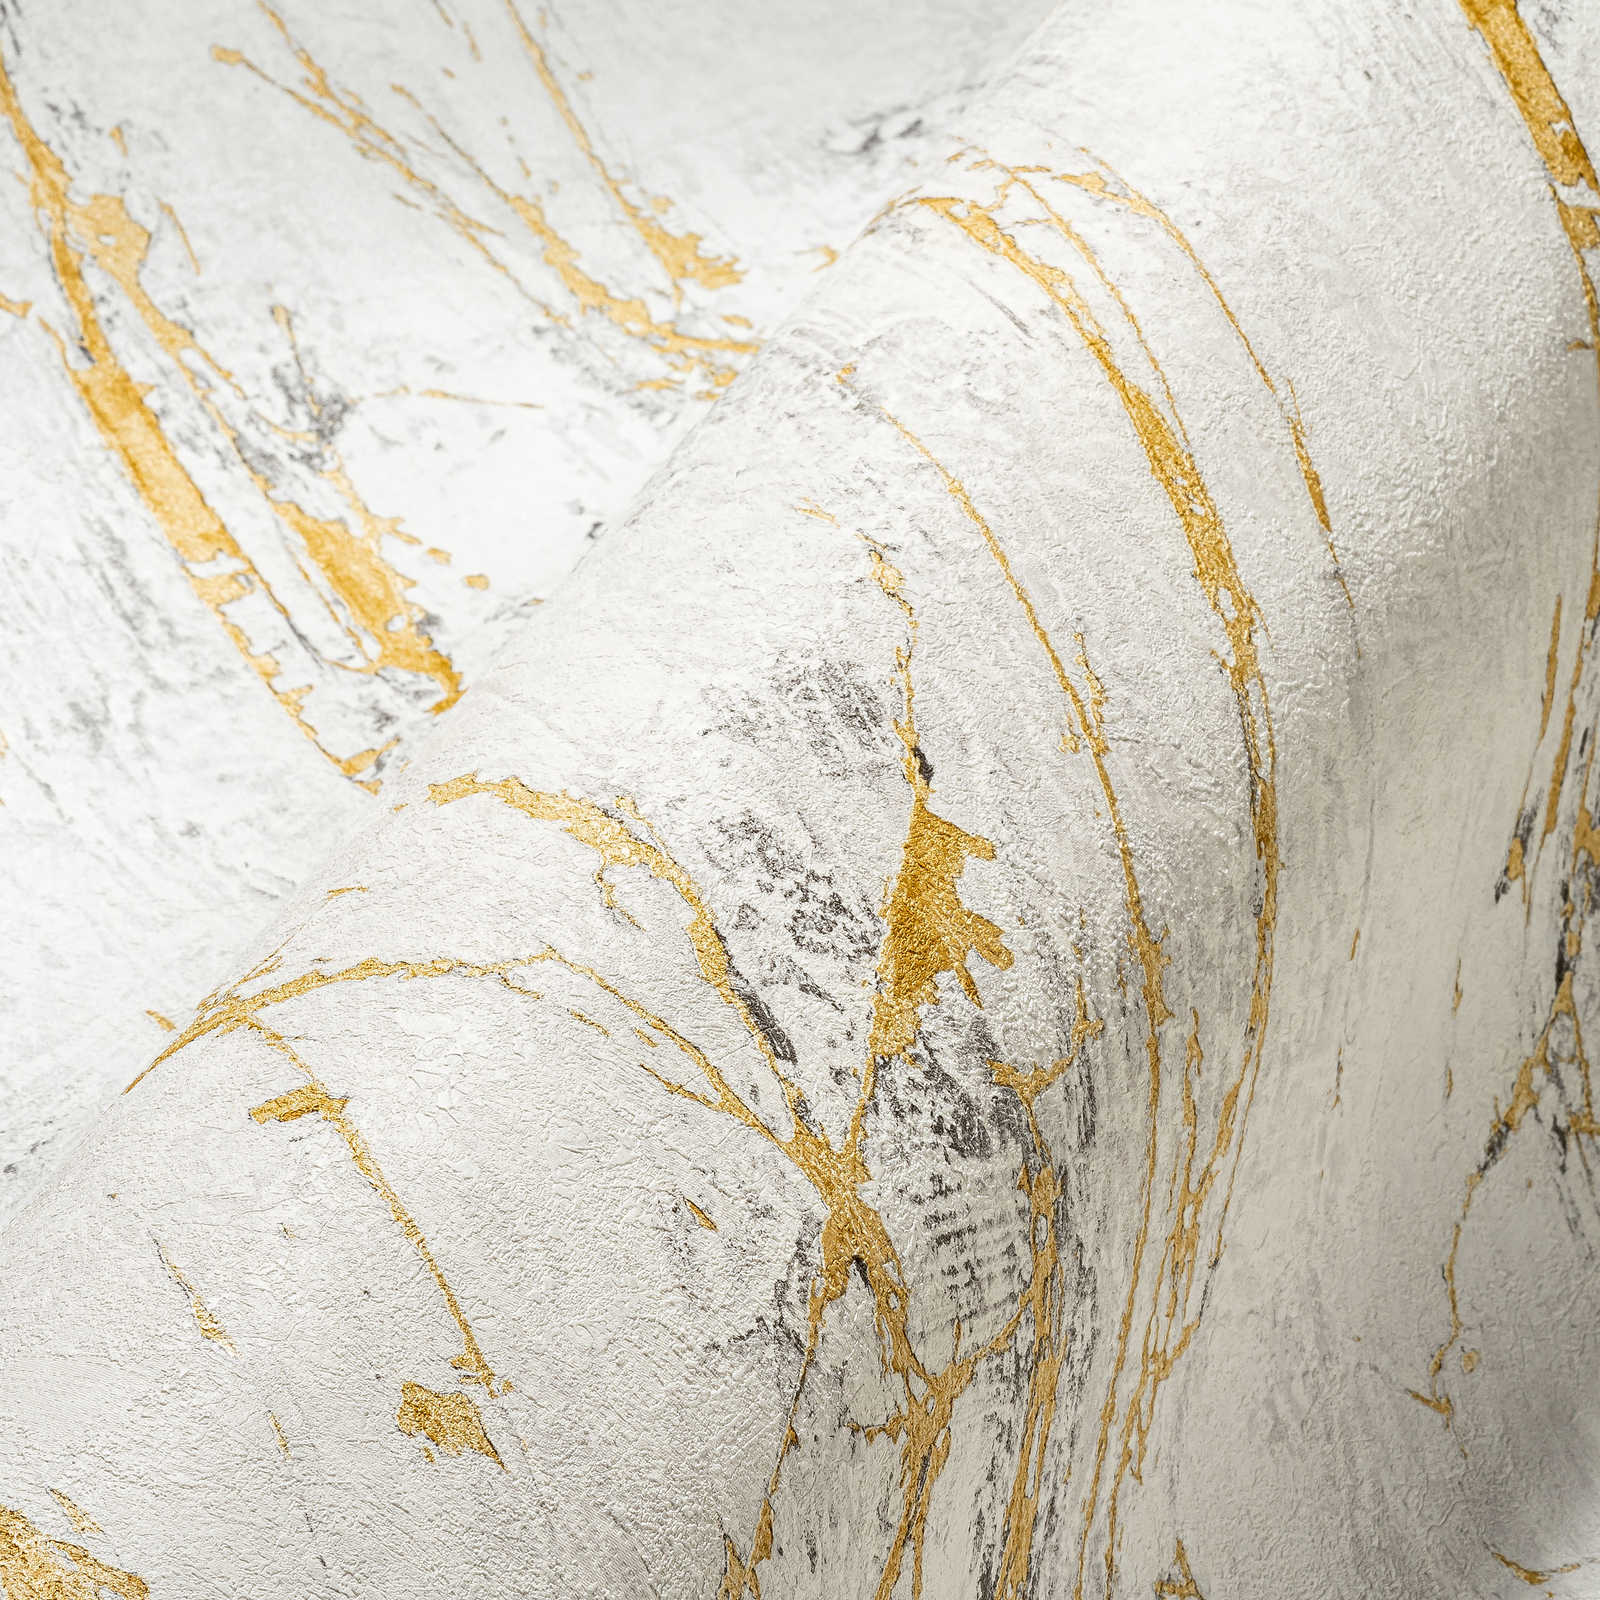             Gold marble wallpaper with metallic texture design - white, metallic
        